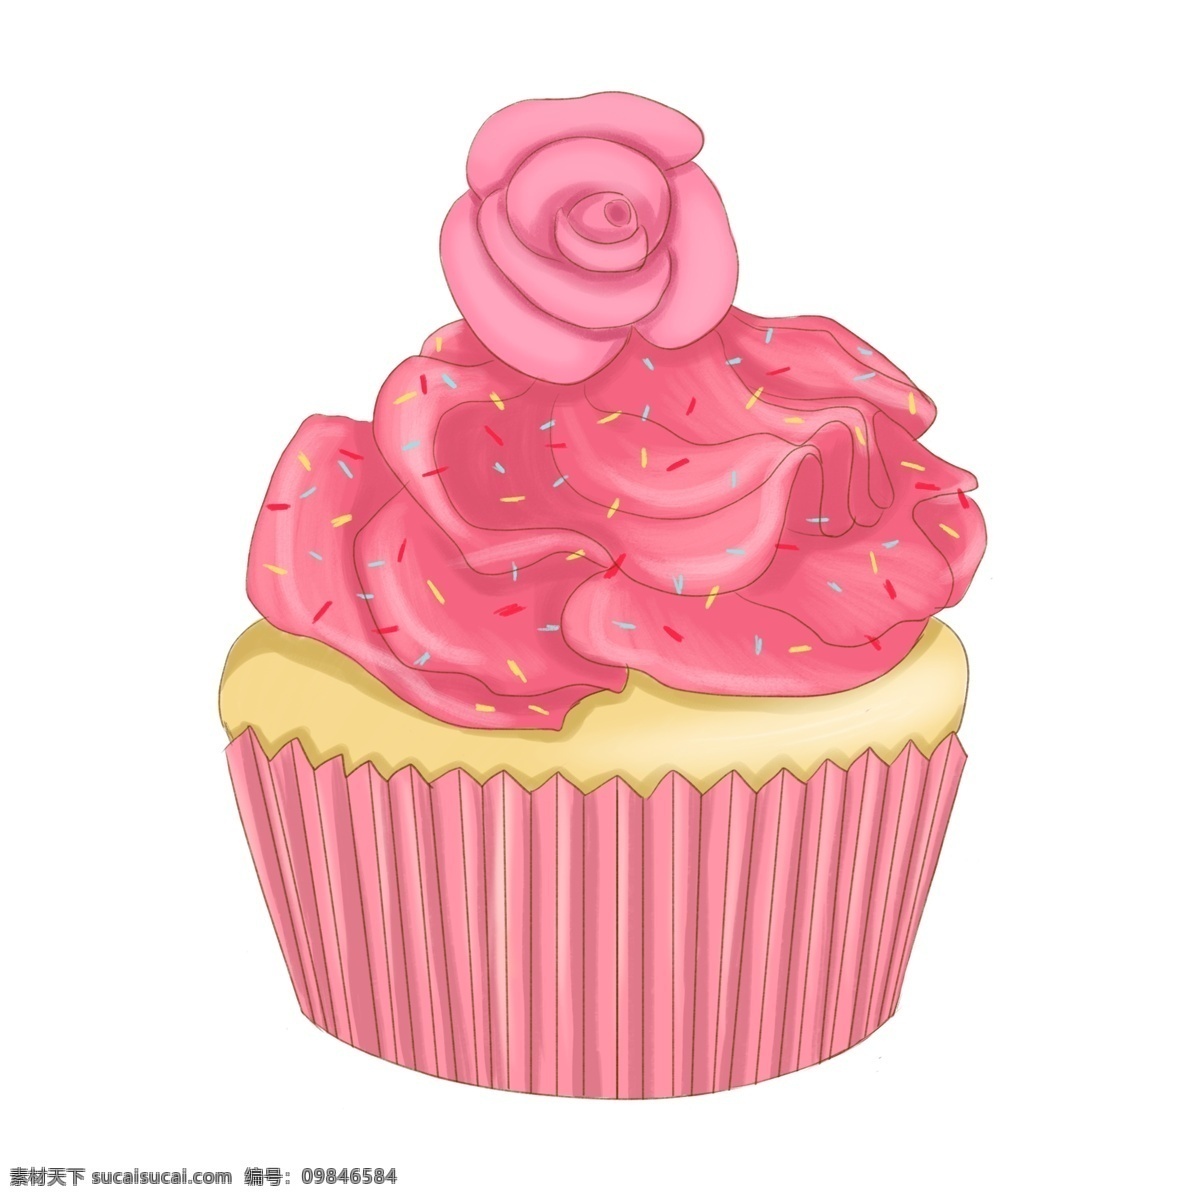 粉红色 蛋糕 矢量图 粉色 玫瑰 花朵 纸盒蛋糕 粉红色玫瑰 粉红色花朵 花朵蛋糕 甜品 甜食 卡通手绘